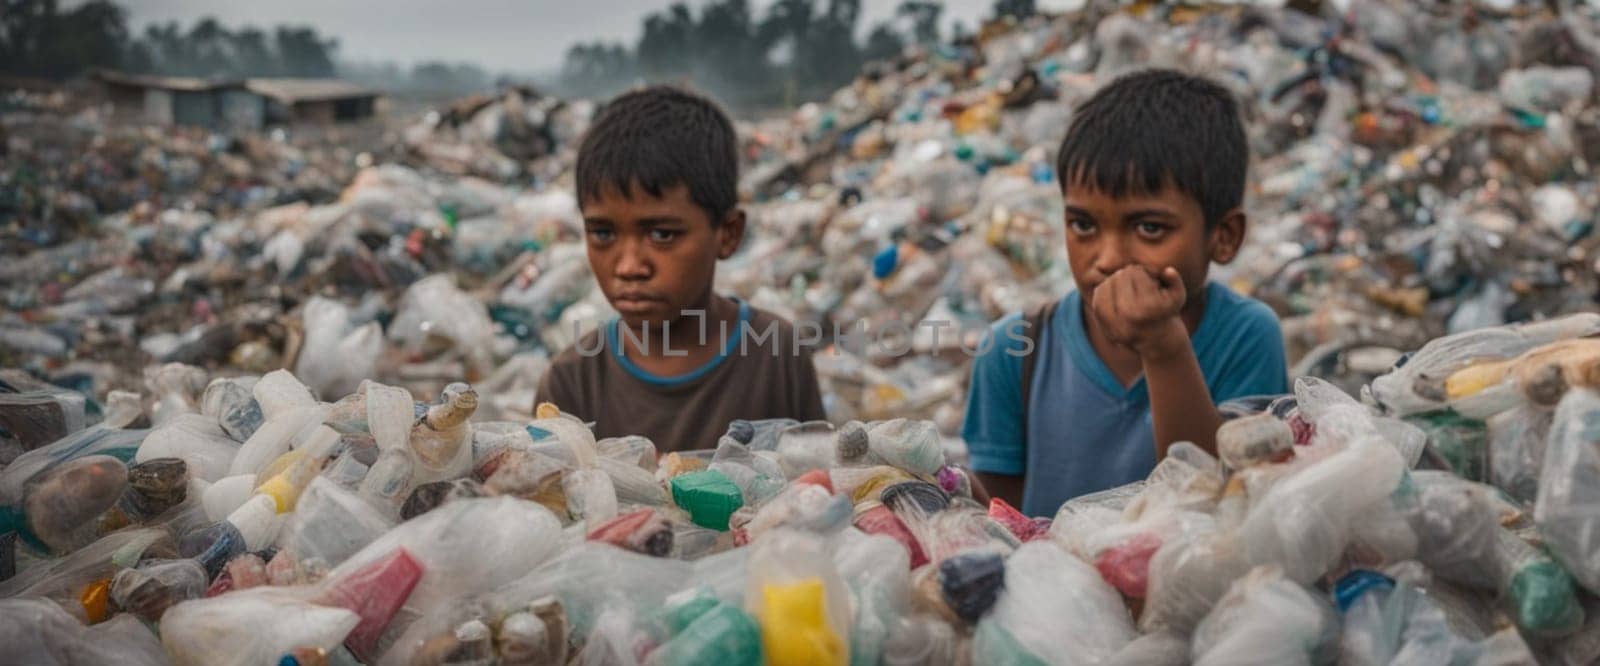 poor children in a contaminated plastic dump illustration generative ai art